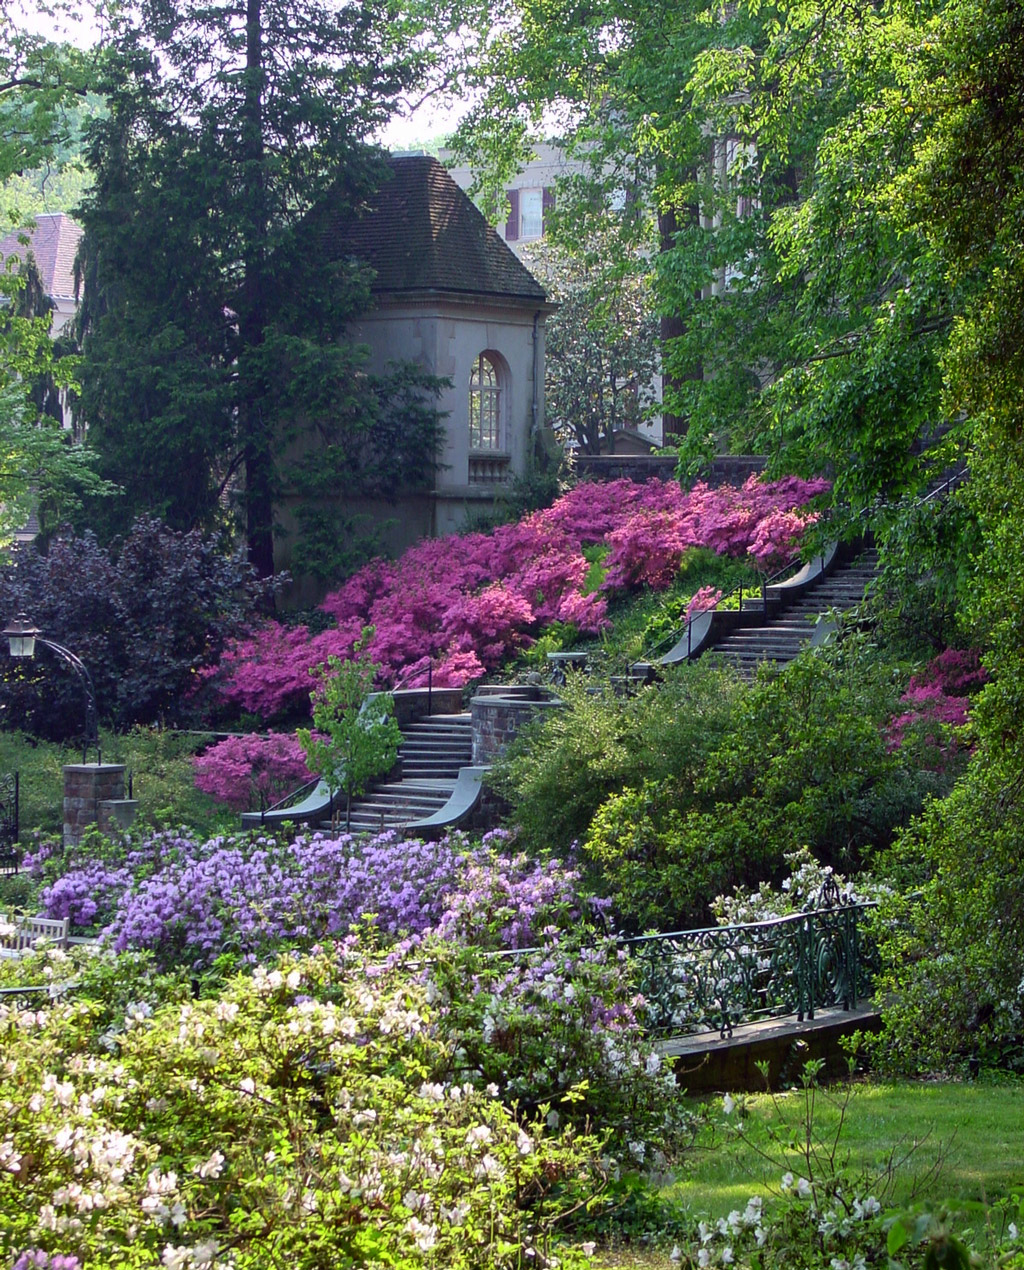 http://www.gardenvisit.com/uploads/image/image/171/17137/winterthur_garden_steps_original.jpg